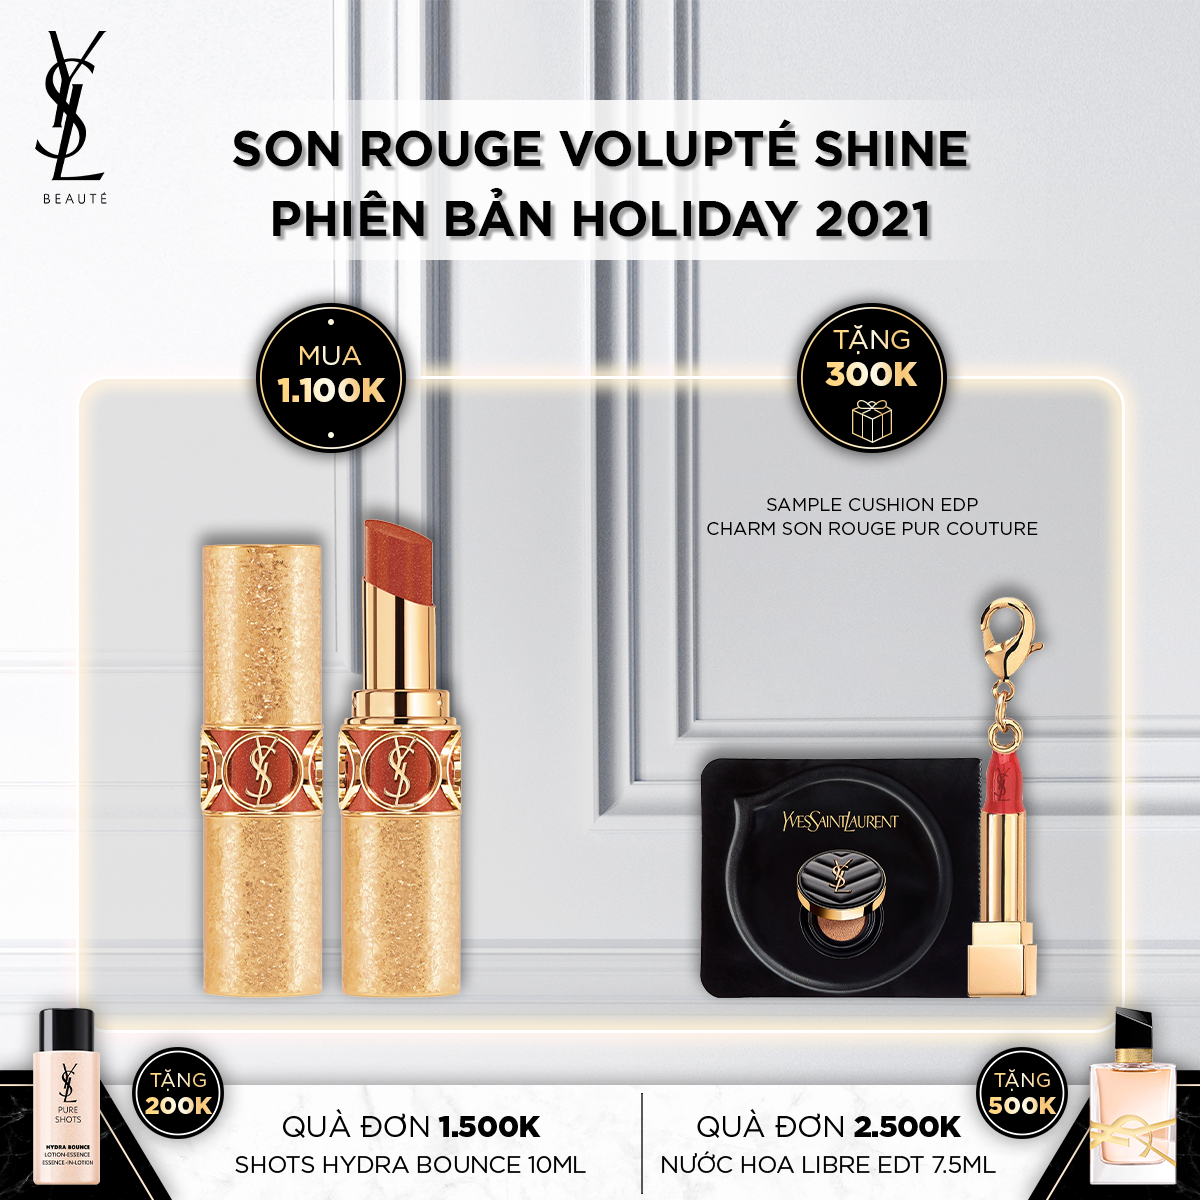 Son Rouge Volupté Shine Phiên Bản Holiday 2021